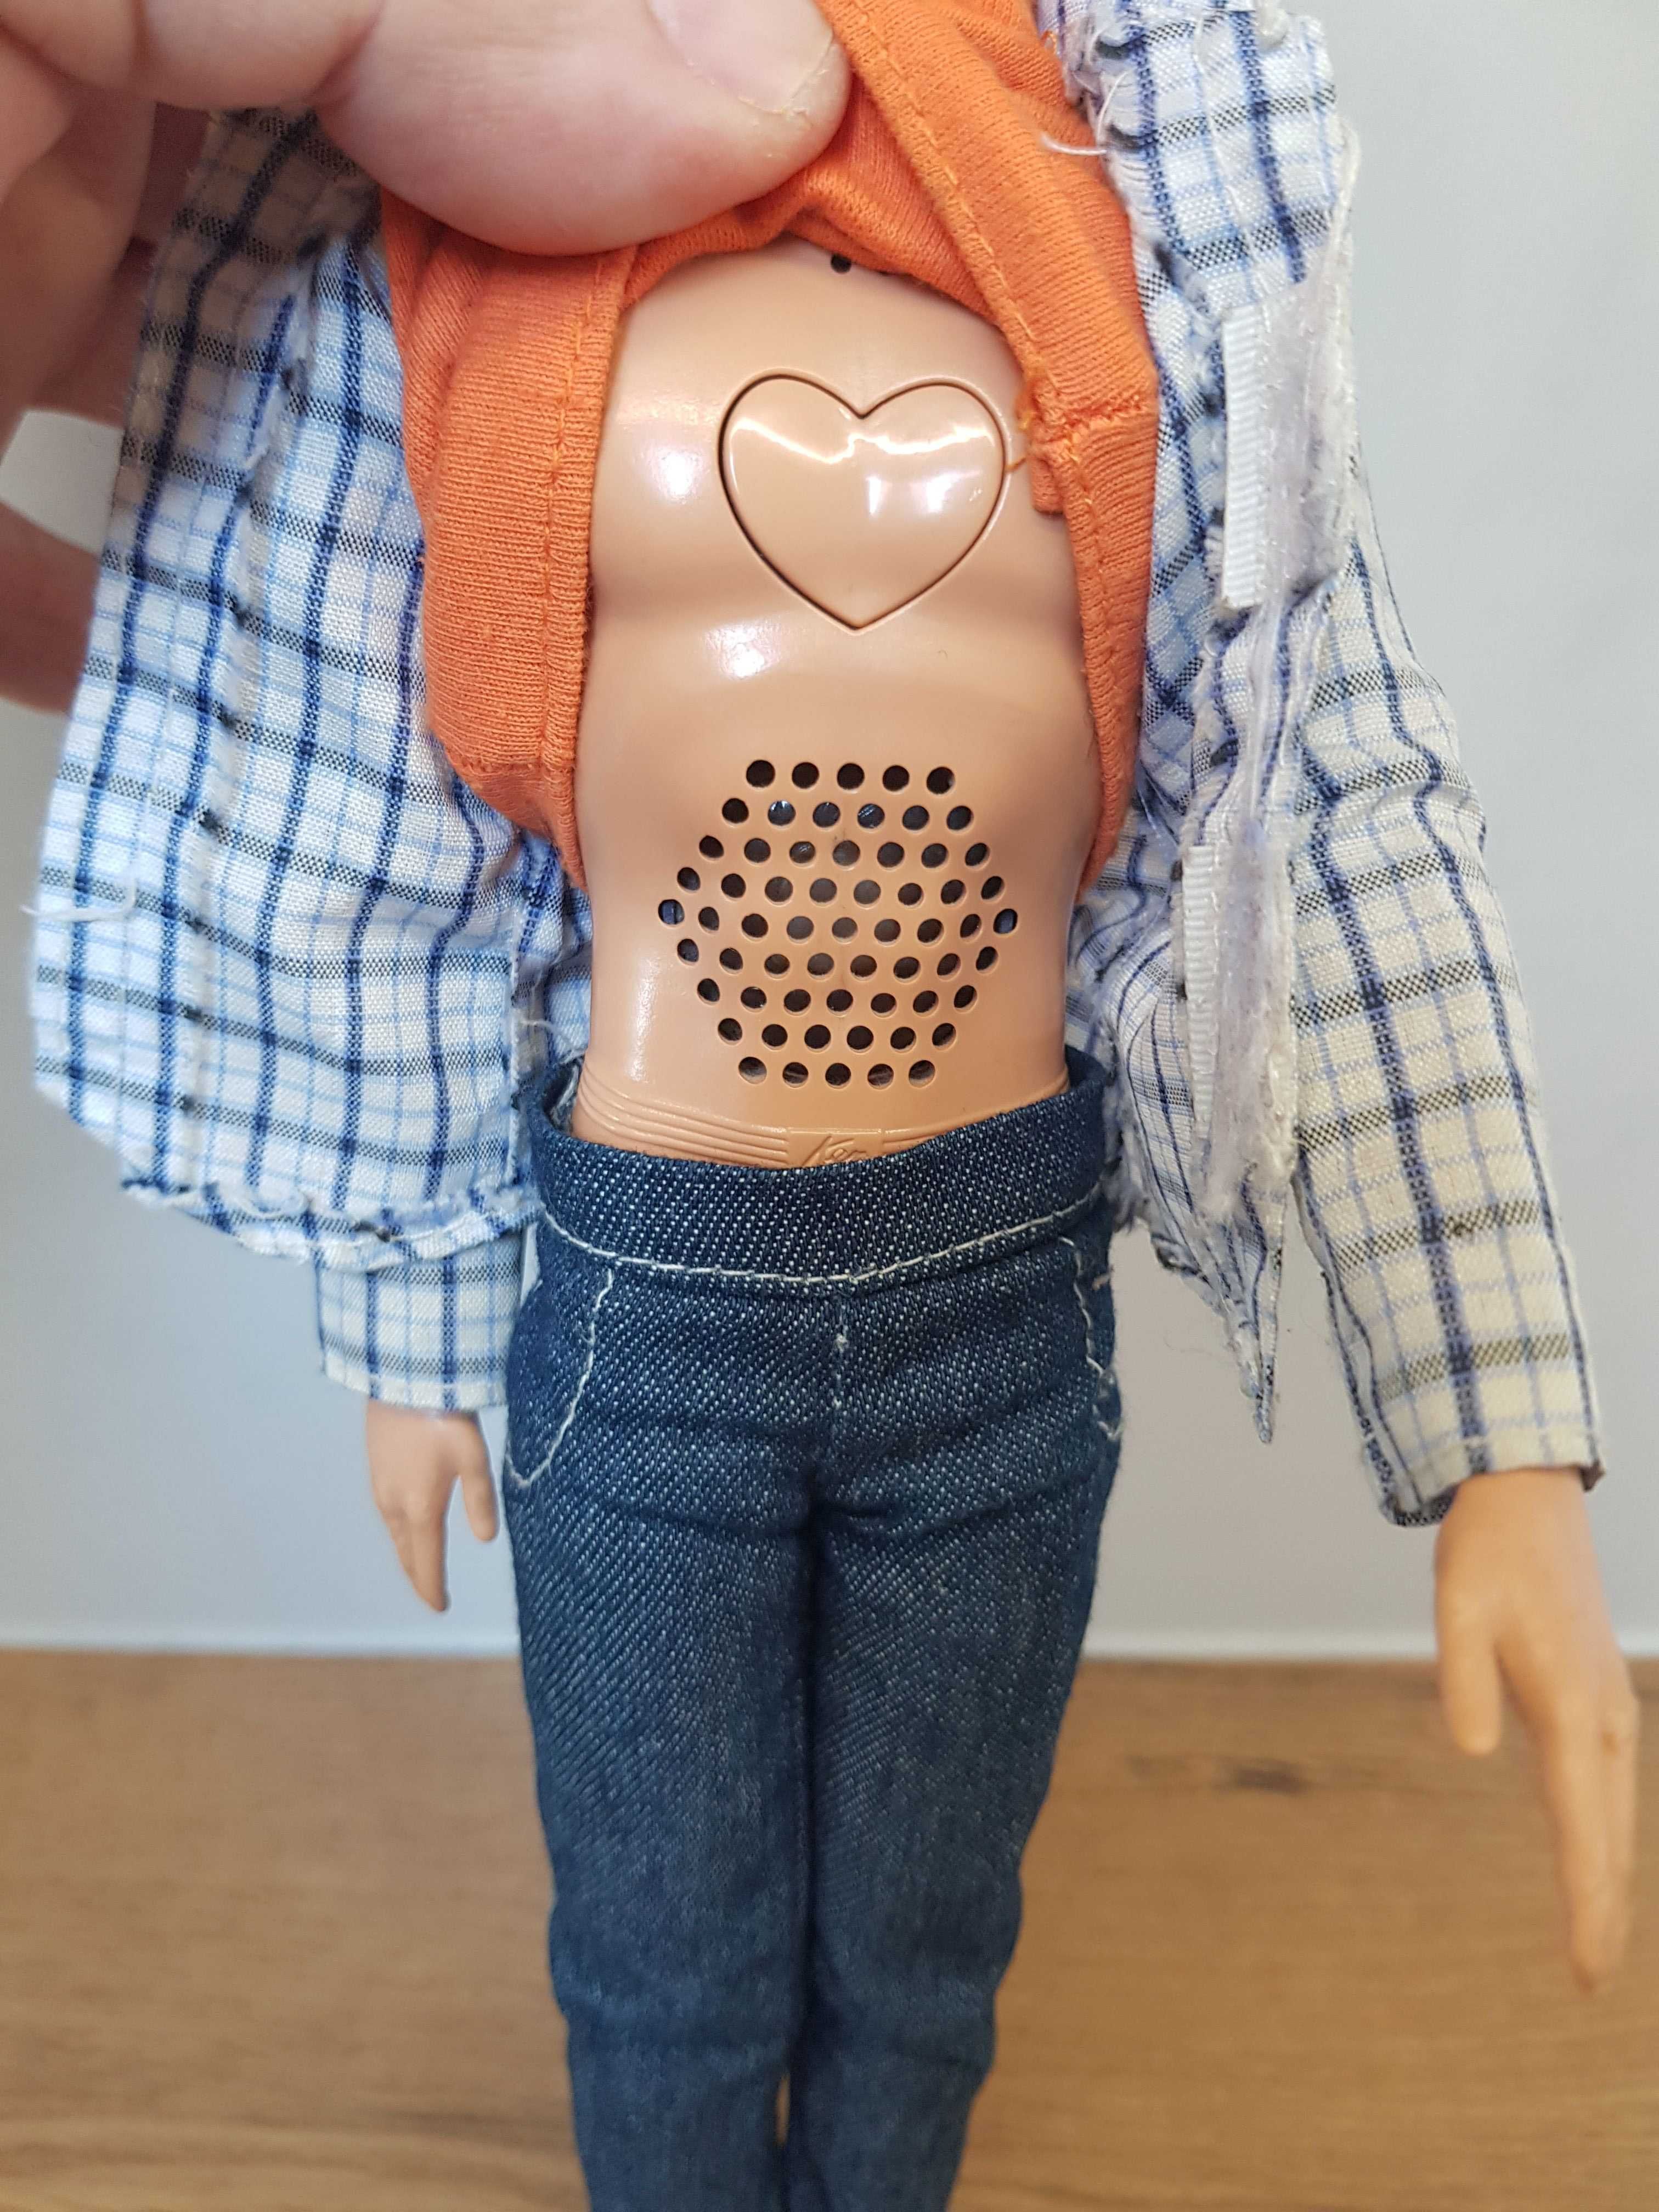 Ken Lalka Barbi Mattel mówiący i nagrywający głos